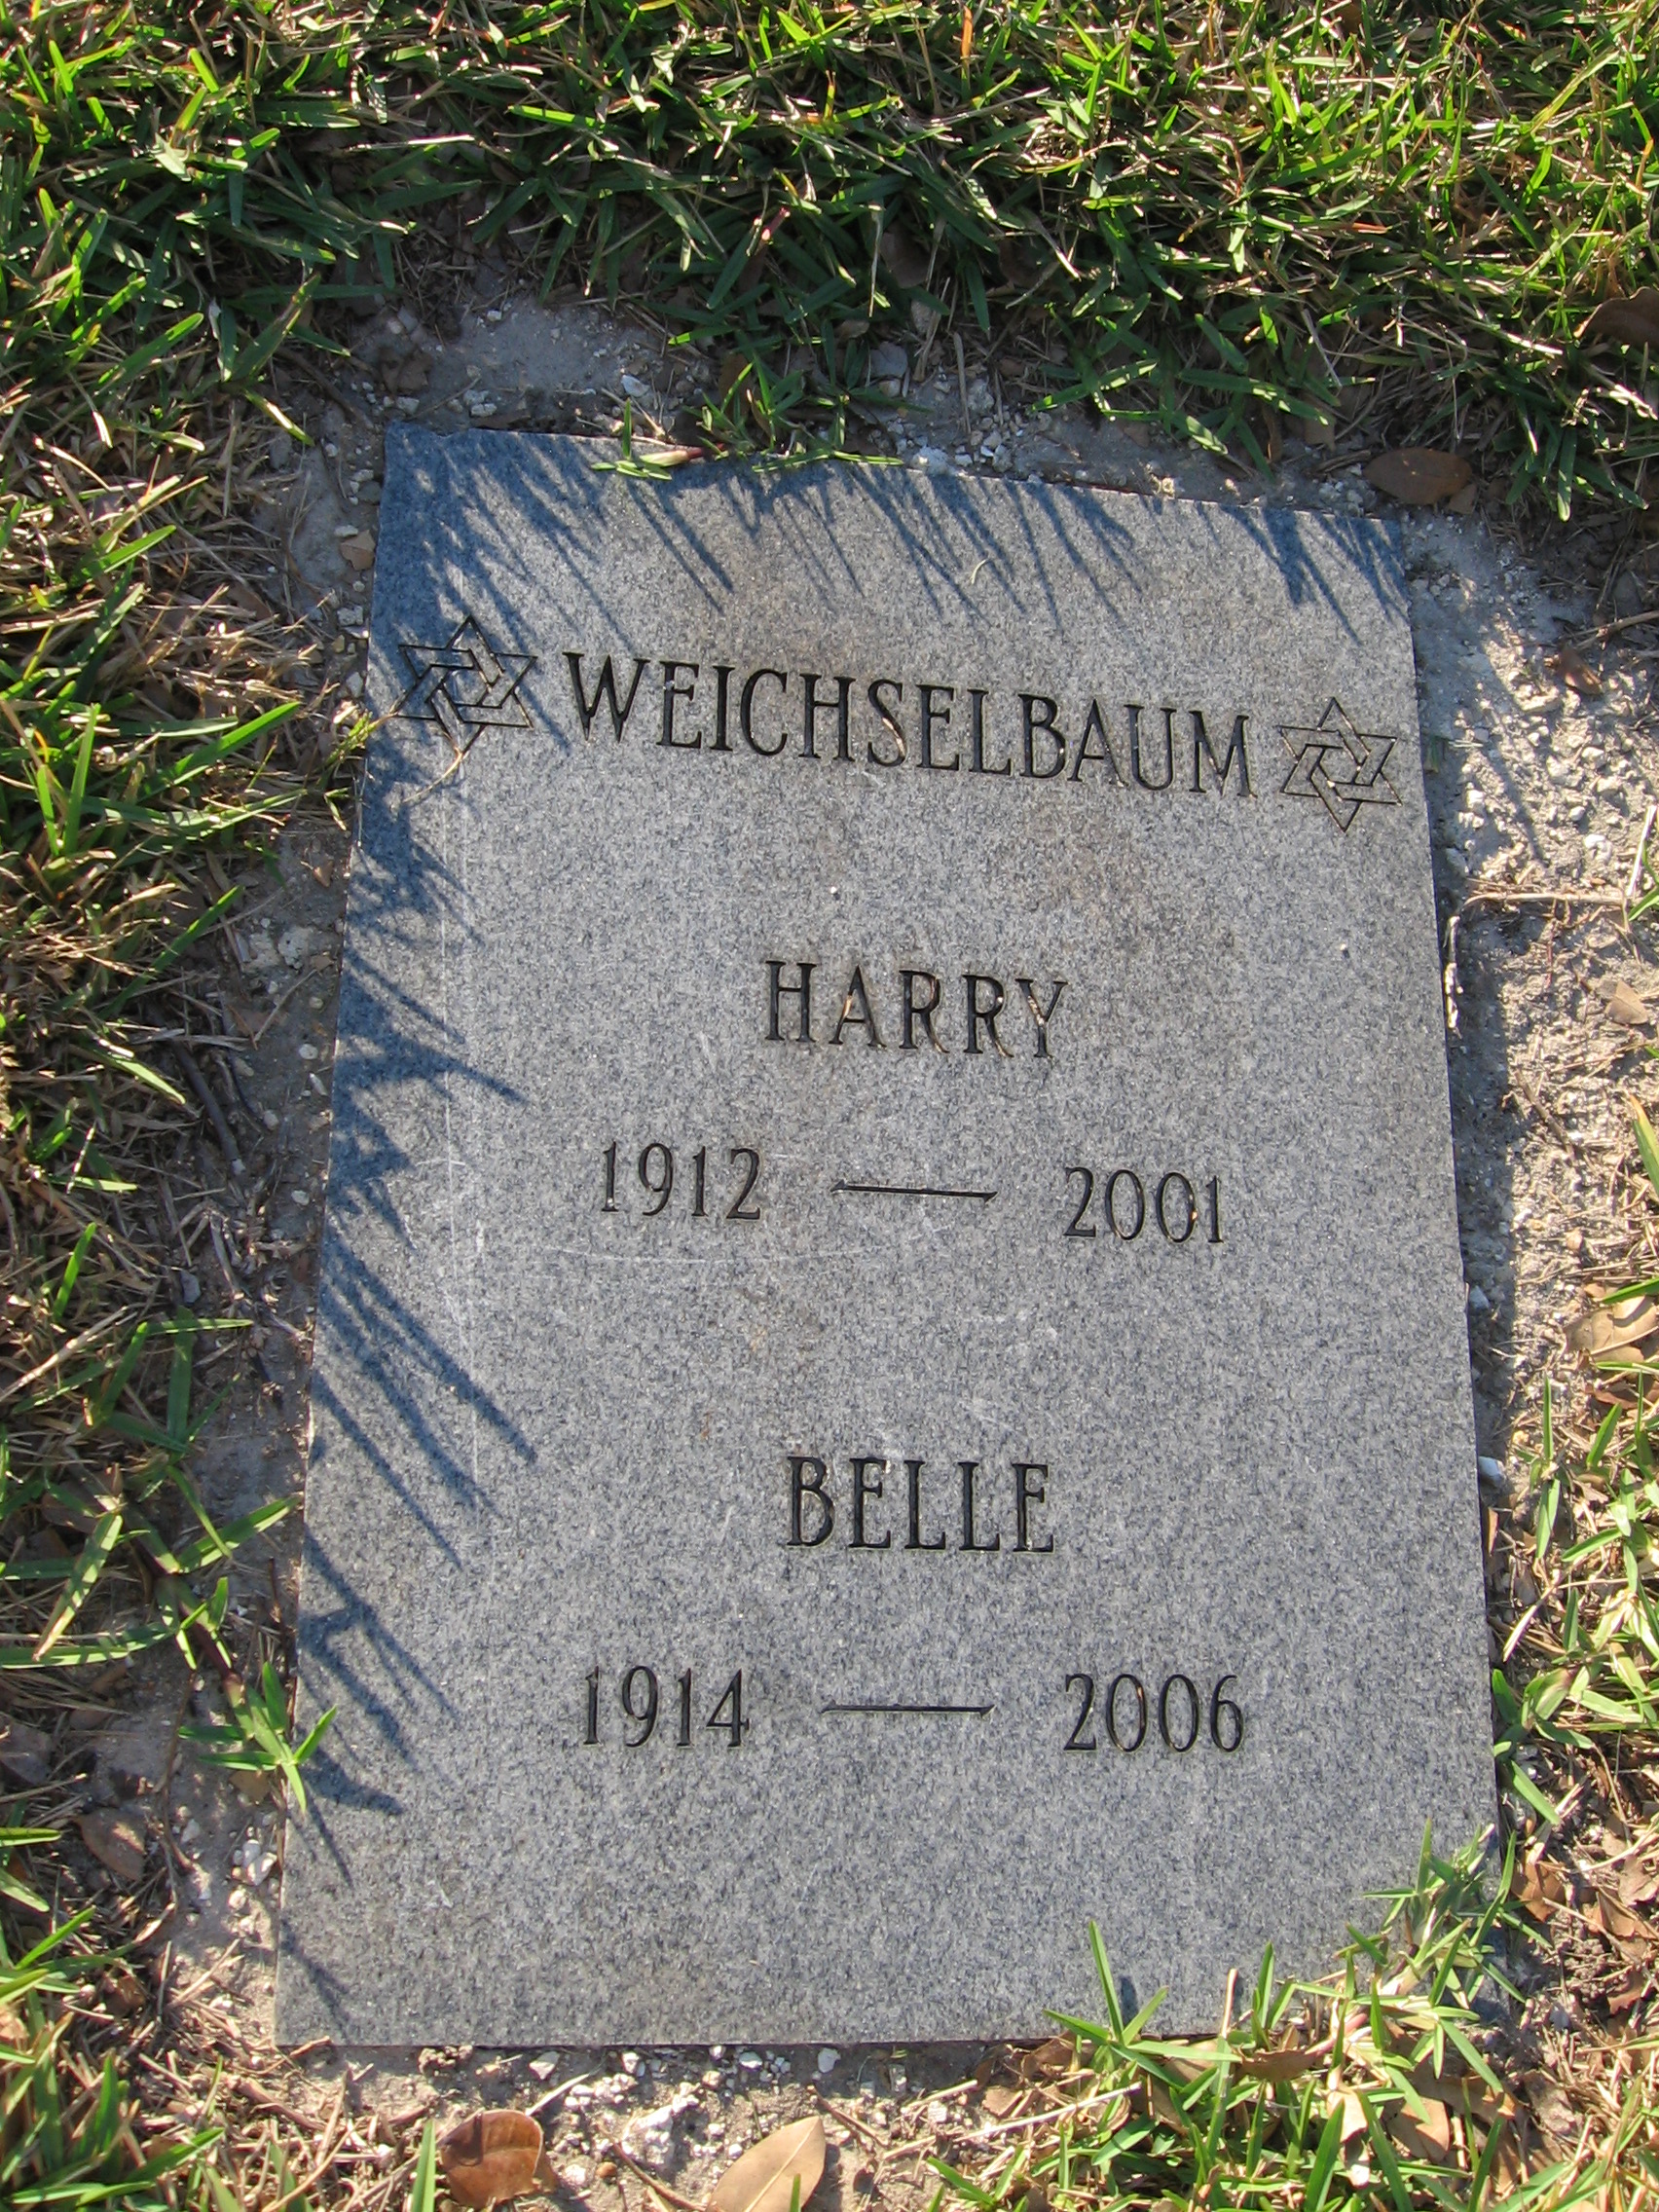 Harry Weichselbaum